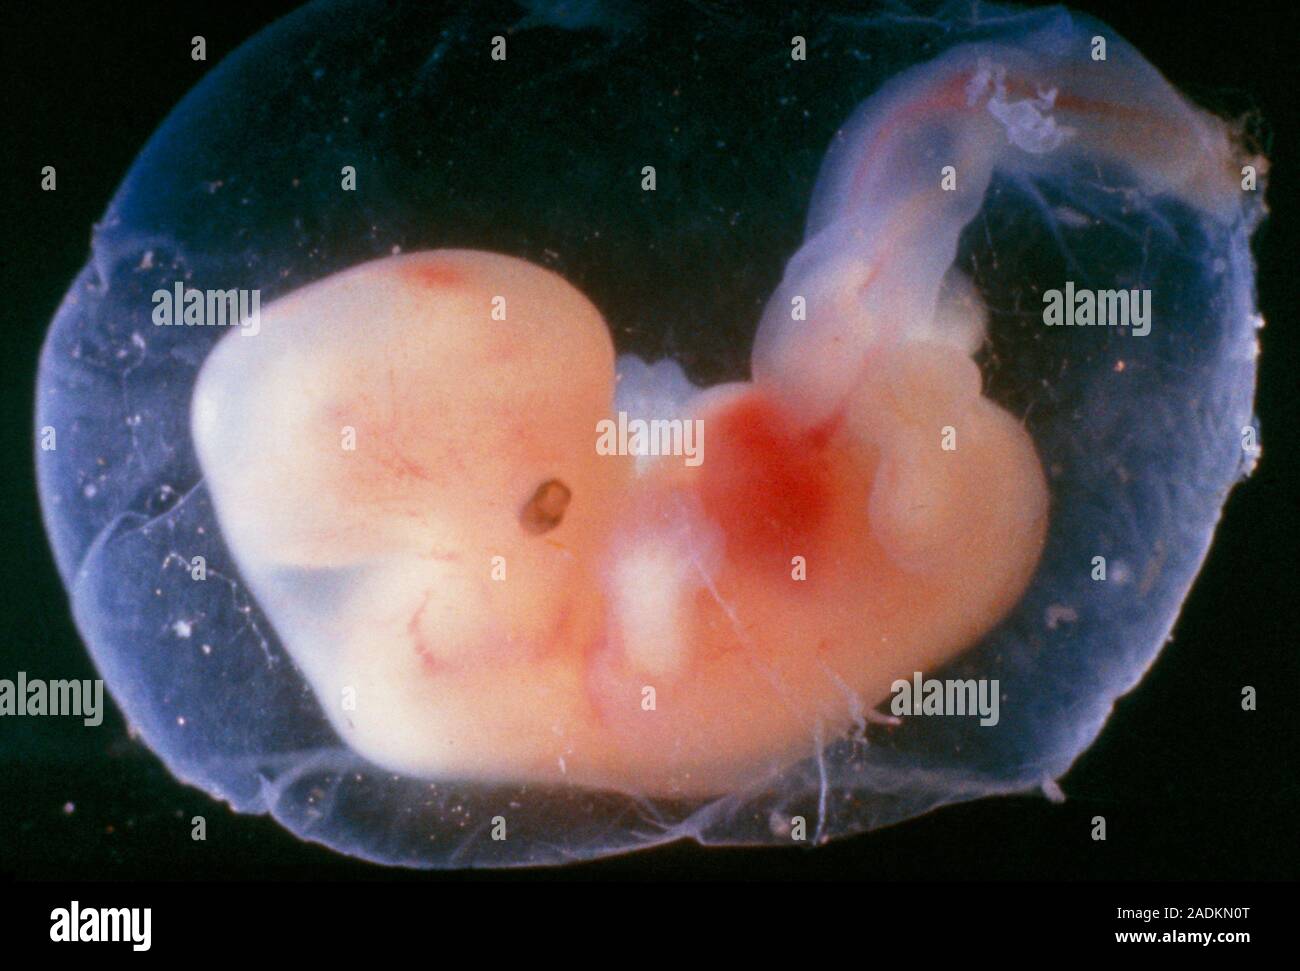 В 2 3 недели 0. Зародыг человека на 5 недели беременности. Эмбрион человека 5 недель.